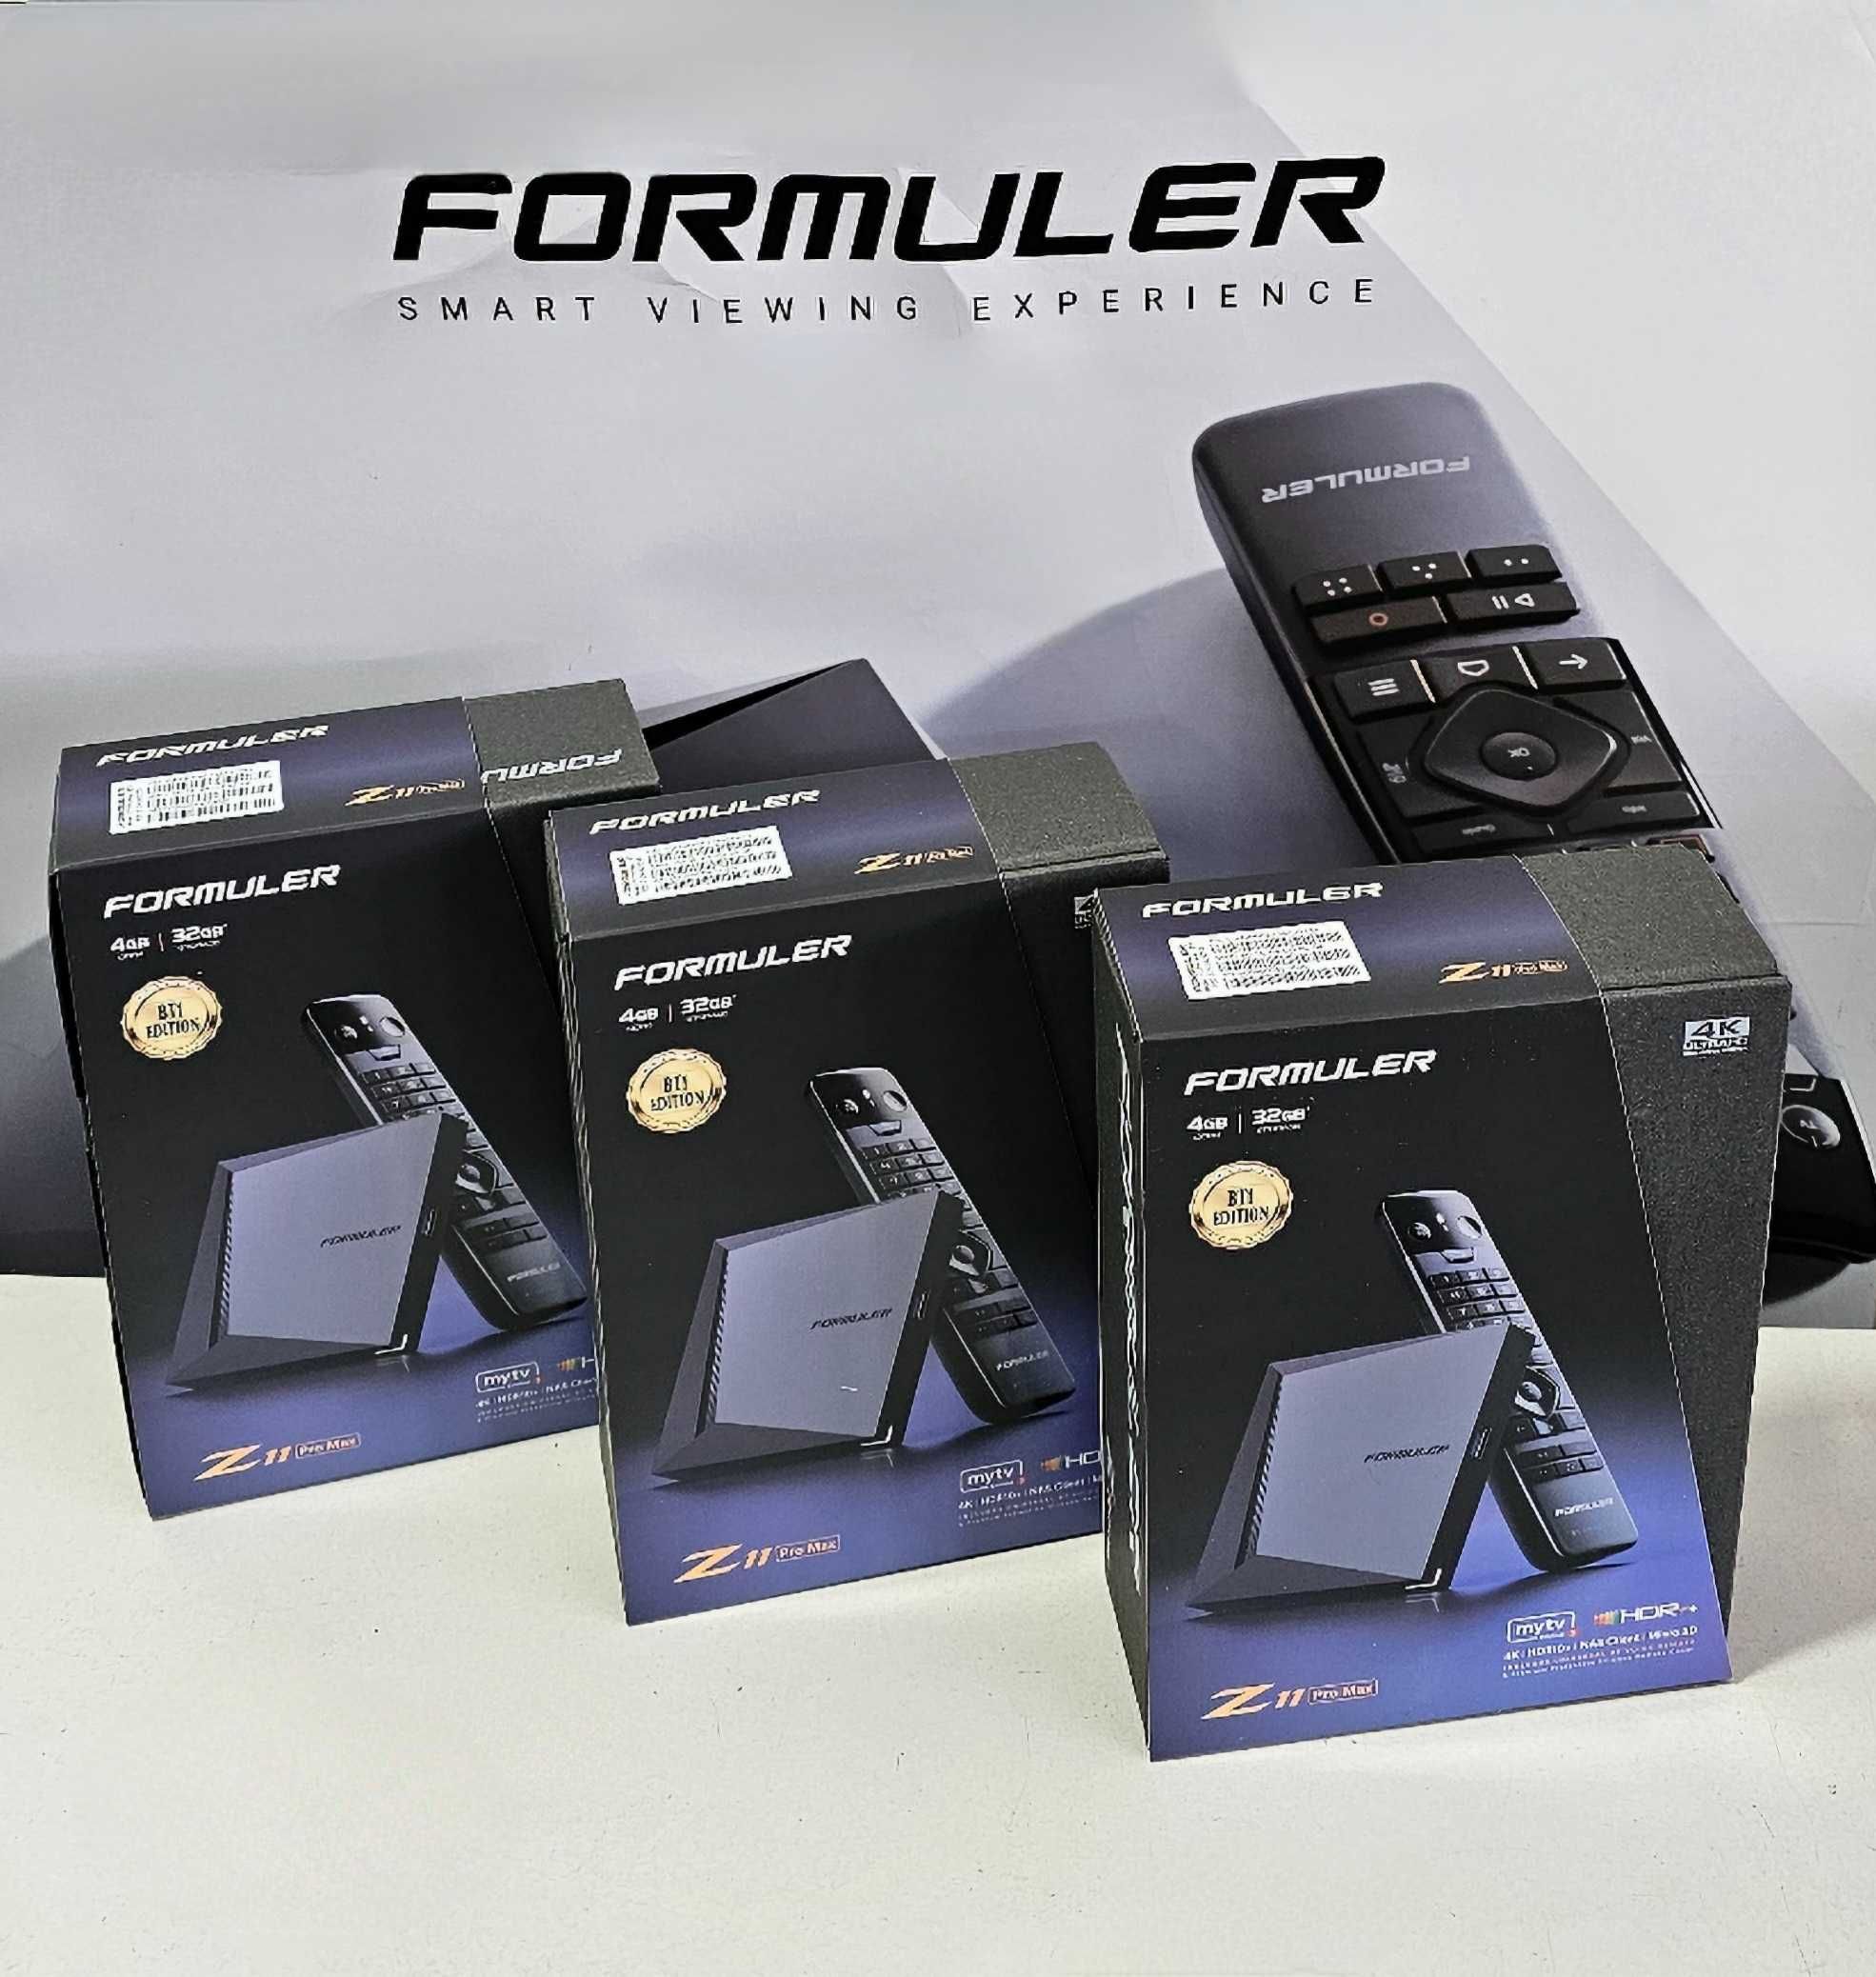 Formuler Z11 PRO MAX BT1 ÉDITION - Formuler Online Store